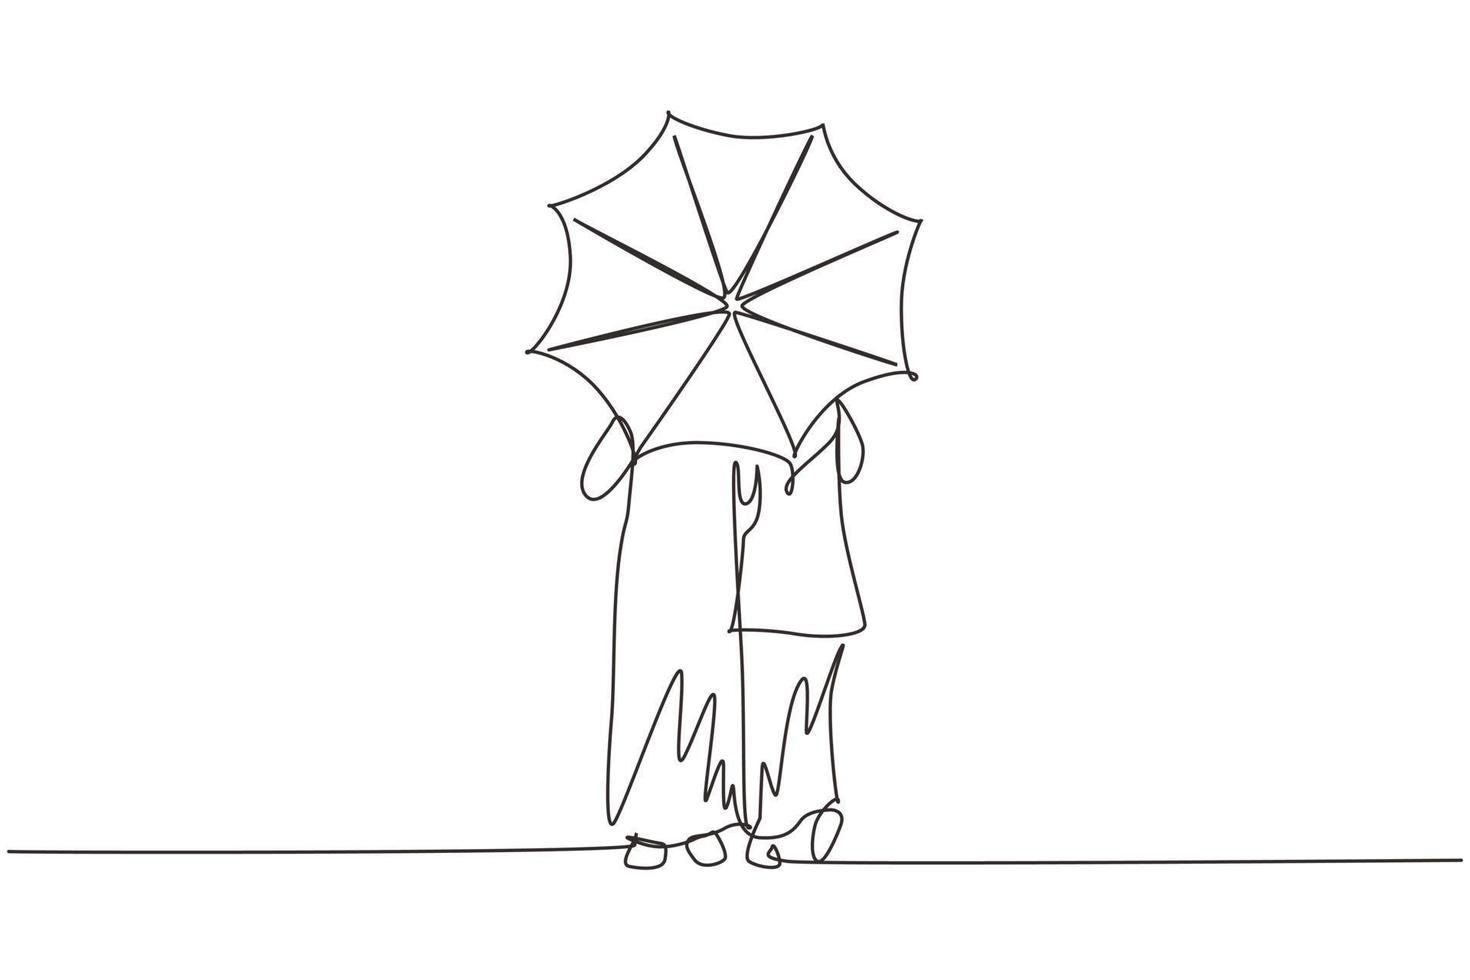 única linha de desenho para trás vista jovem casal árabe homem mulher, menina e menino andando segurando guarda-chuva sob chuva. casal romântico no tempo chuvoso de outono. vetor gráfico de desenho de desenho de linha contínua